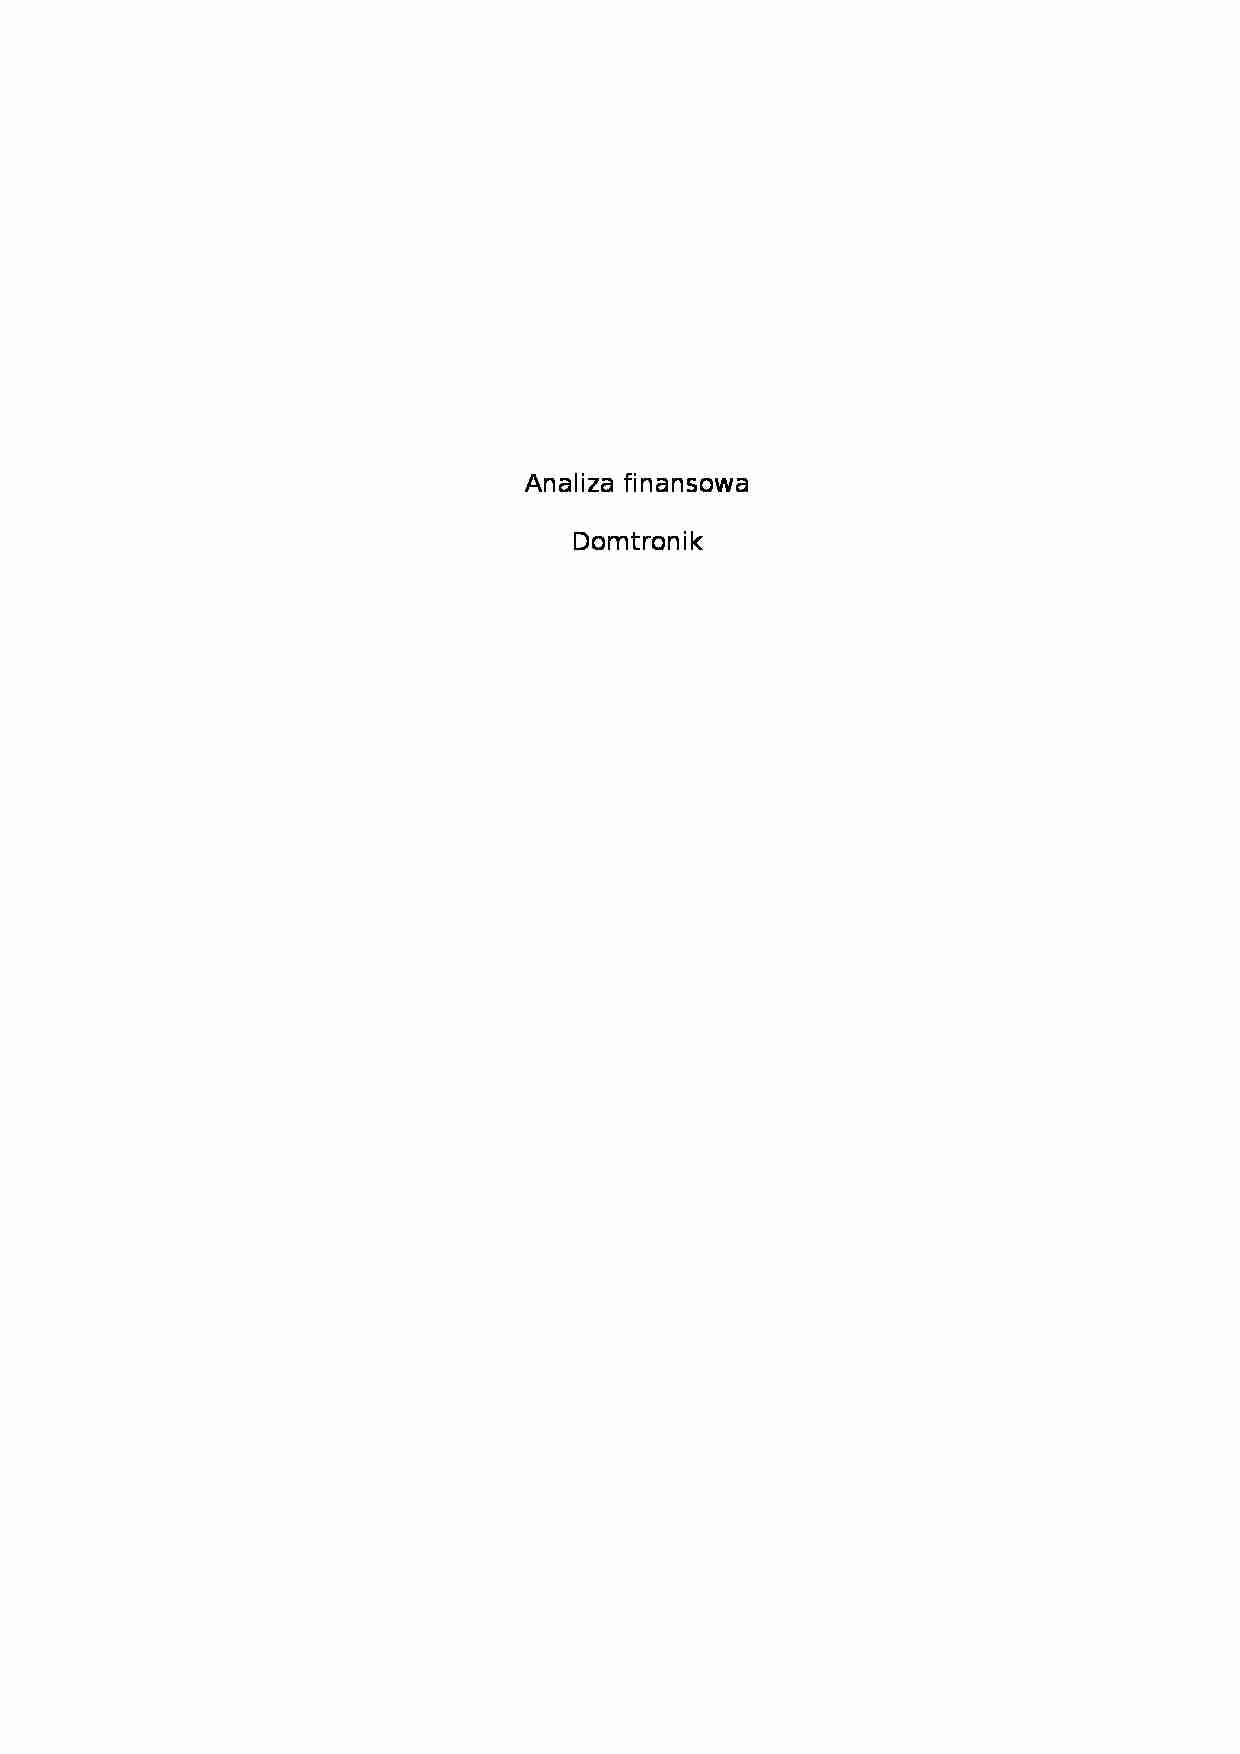 Analiza finansowa - artykuły AGD - strona 1